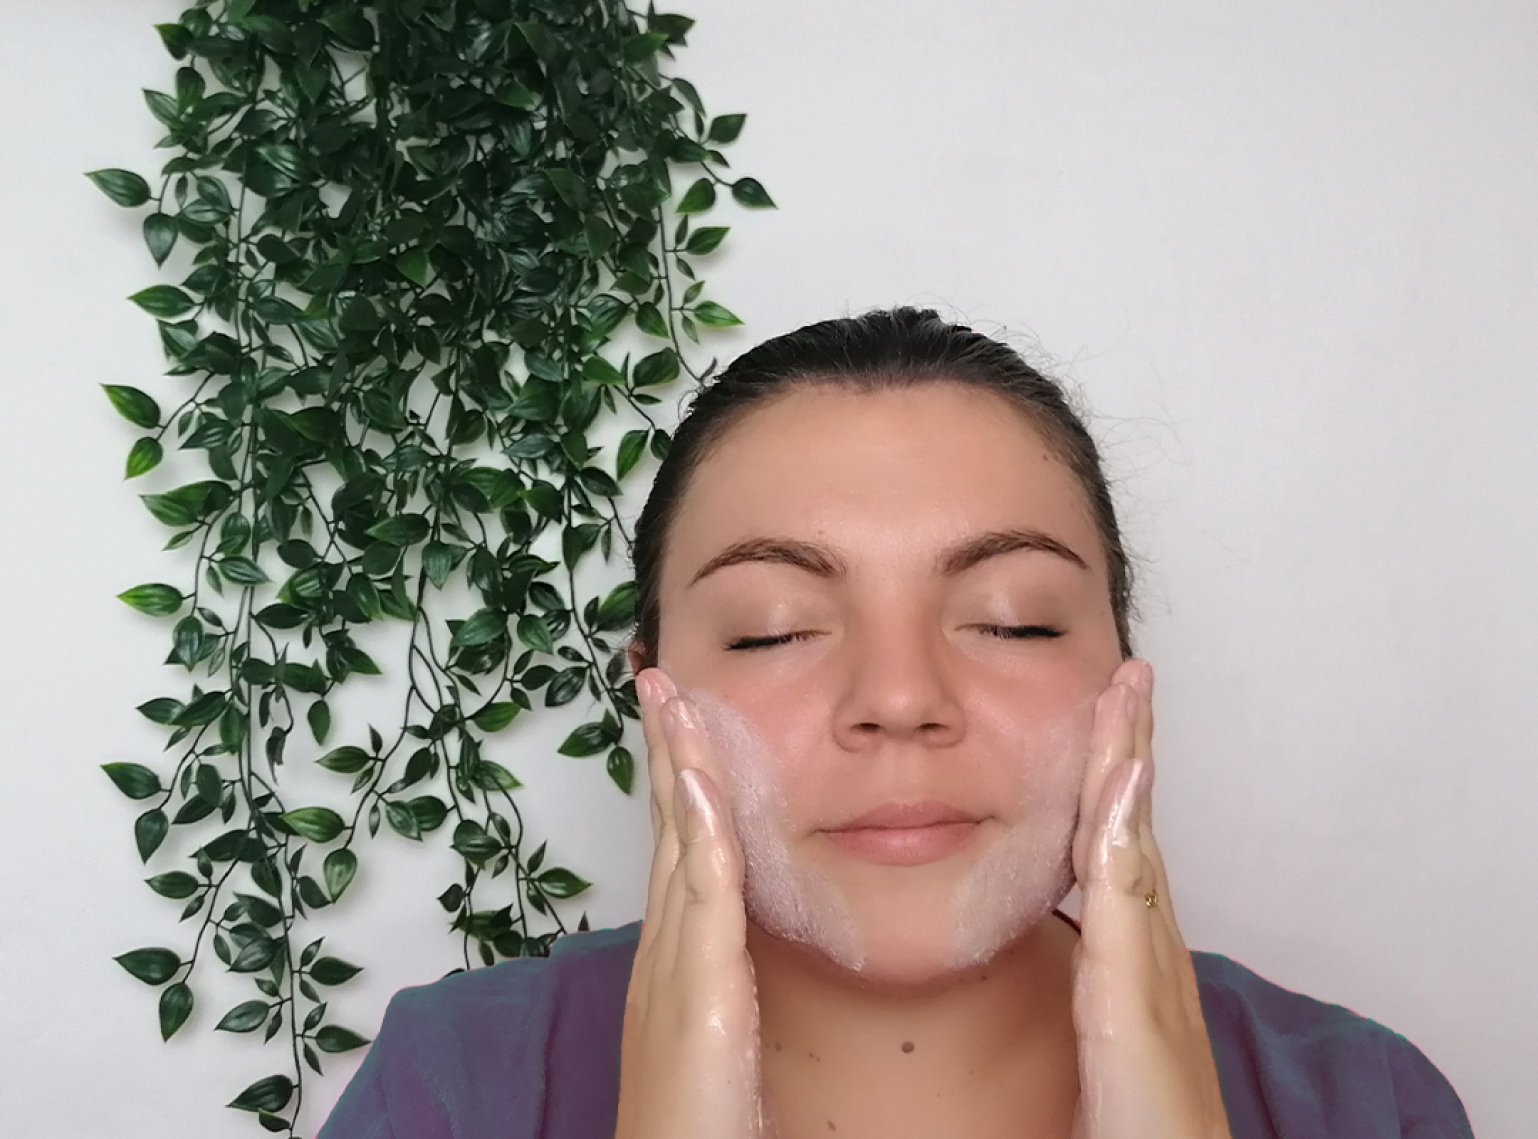 Comment bien nettoyer son visage 